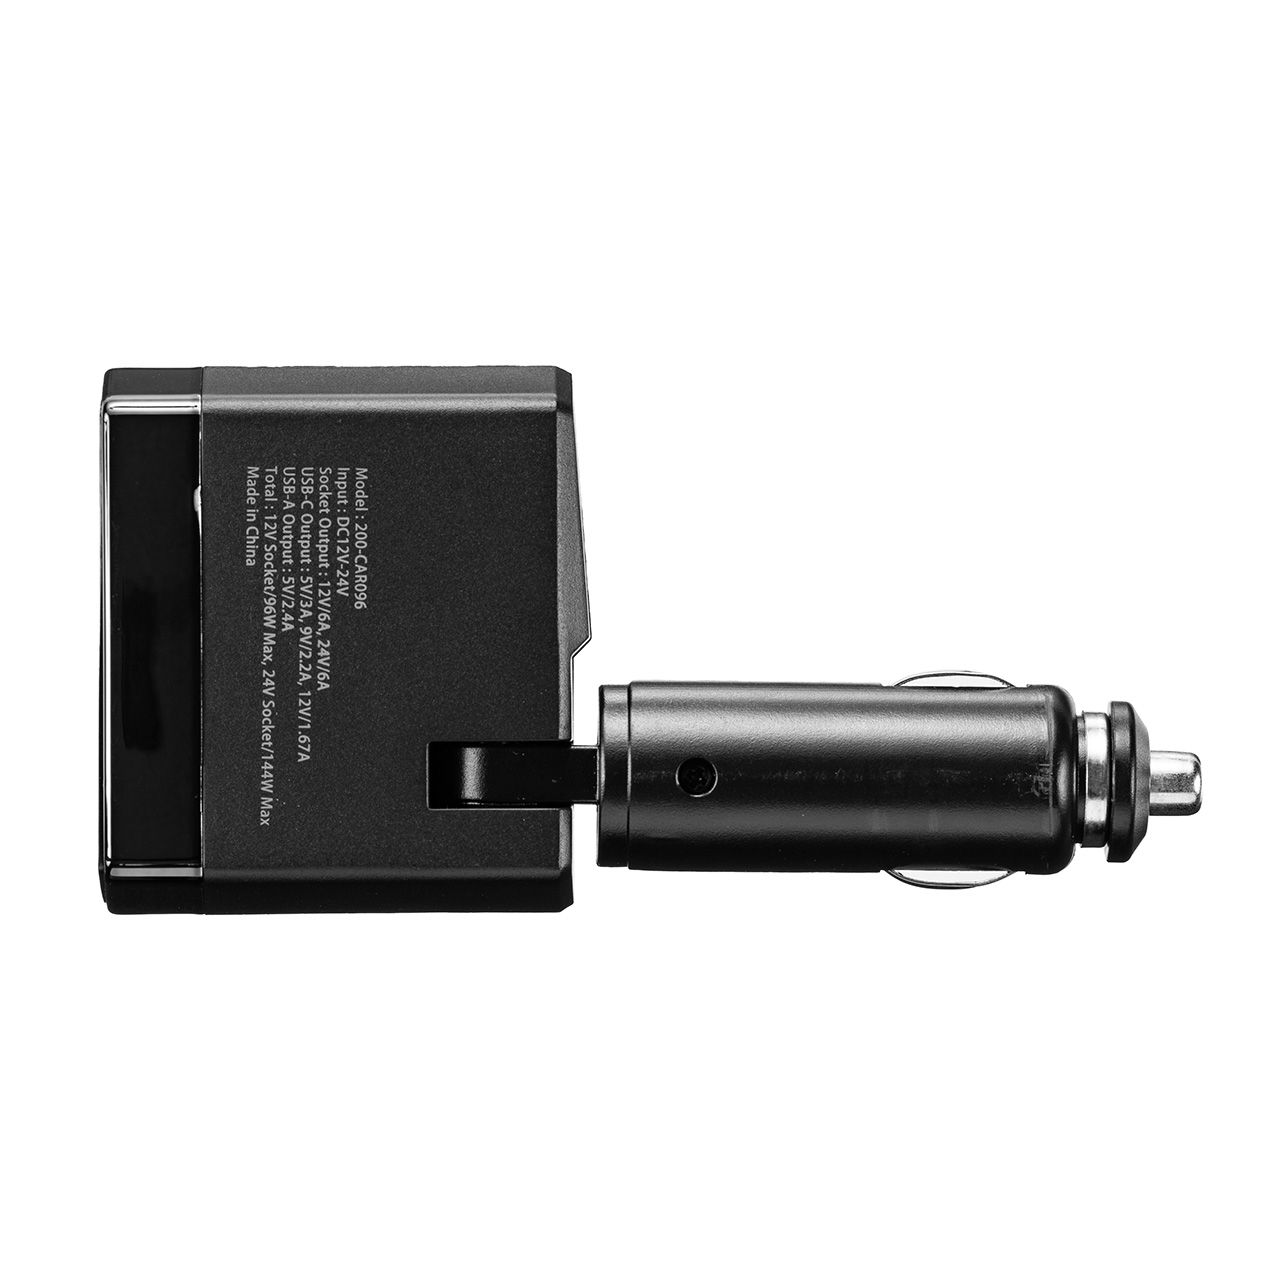 カーチャージャー ソケット付き 車載充電器 USB PD20W Type-A Type-C 角度調整 200-CAR096